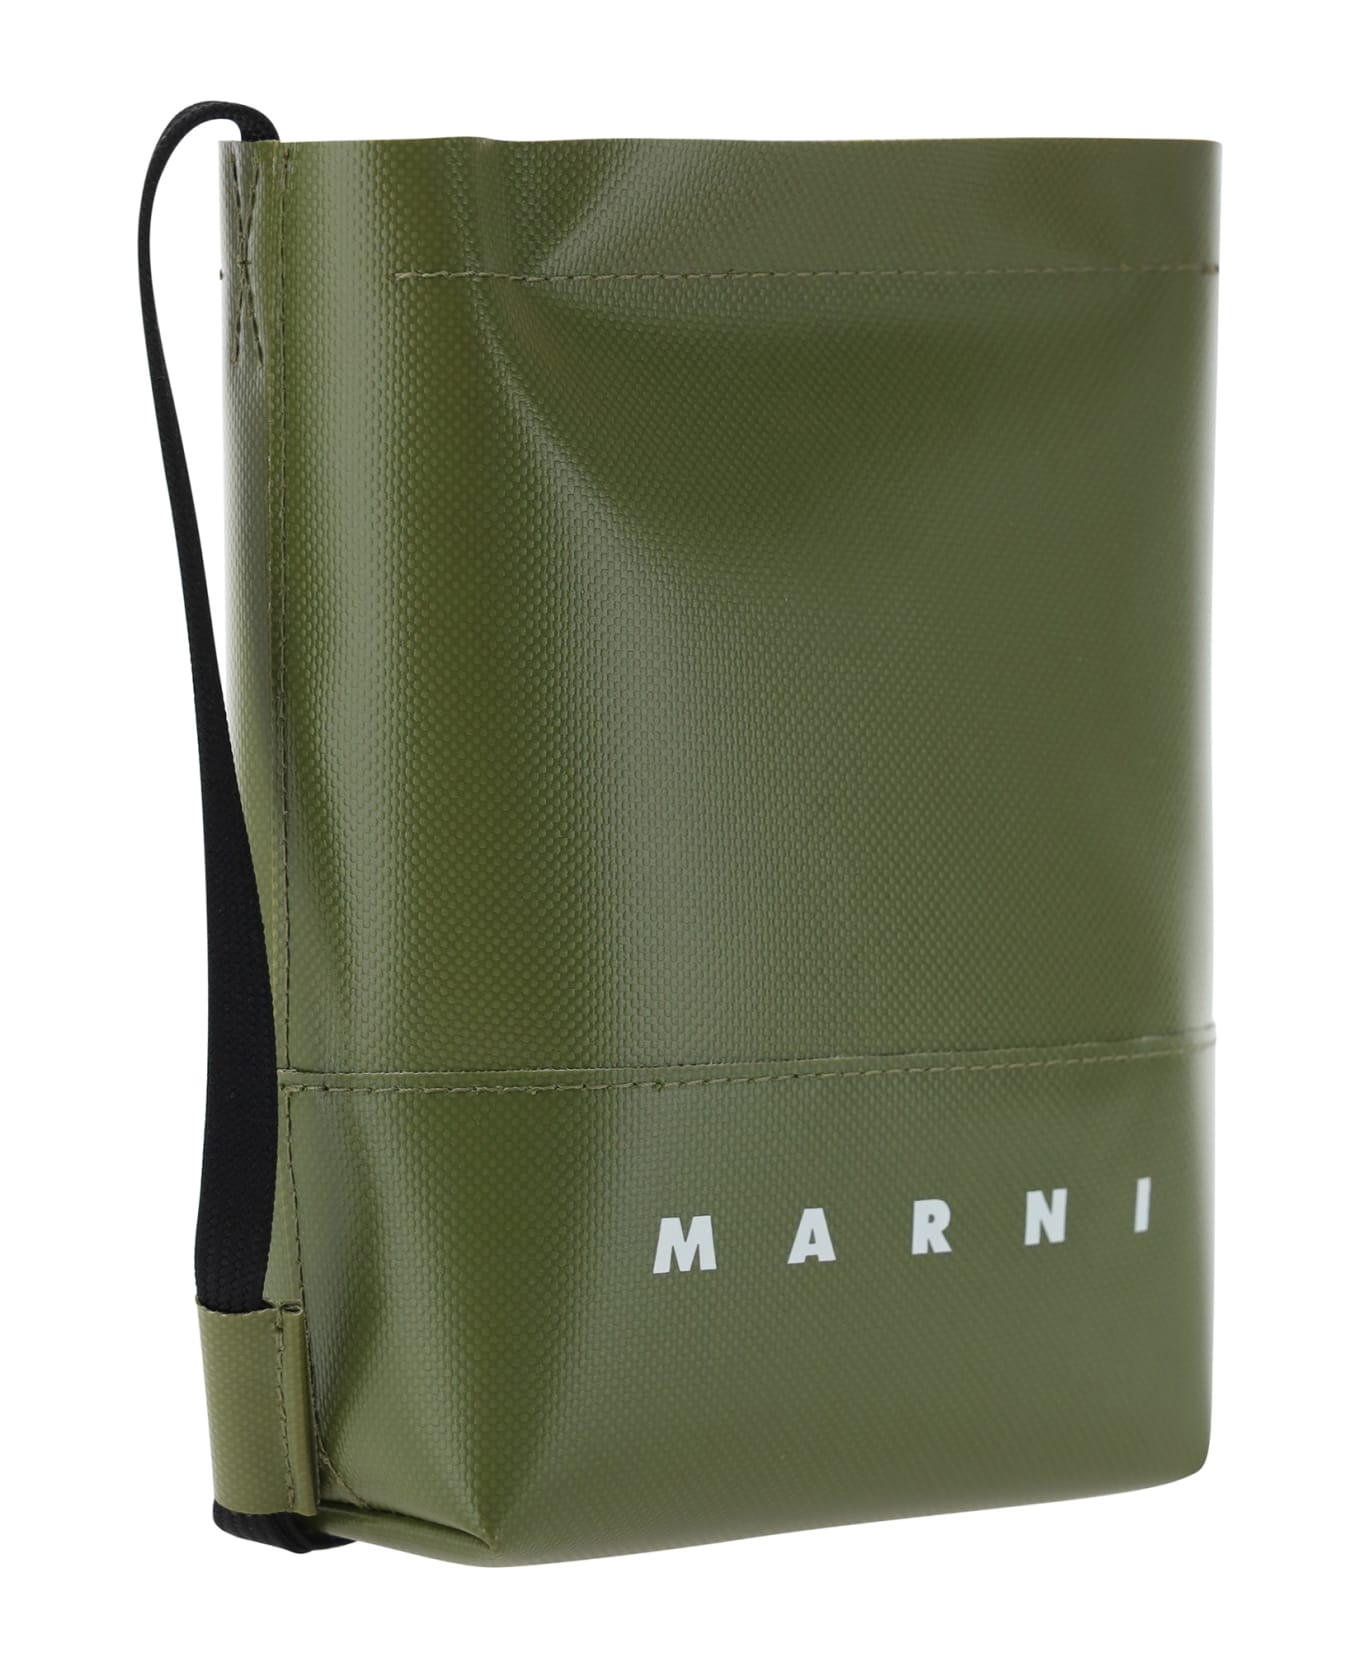 Marni Shoulder Bag - 00v67